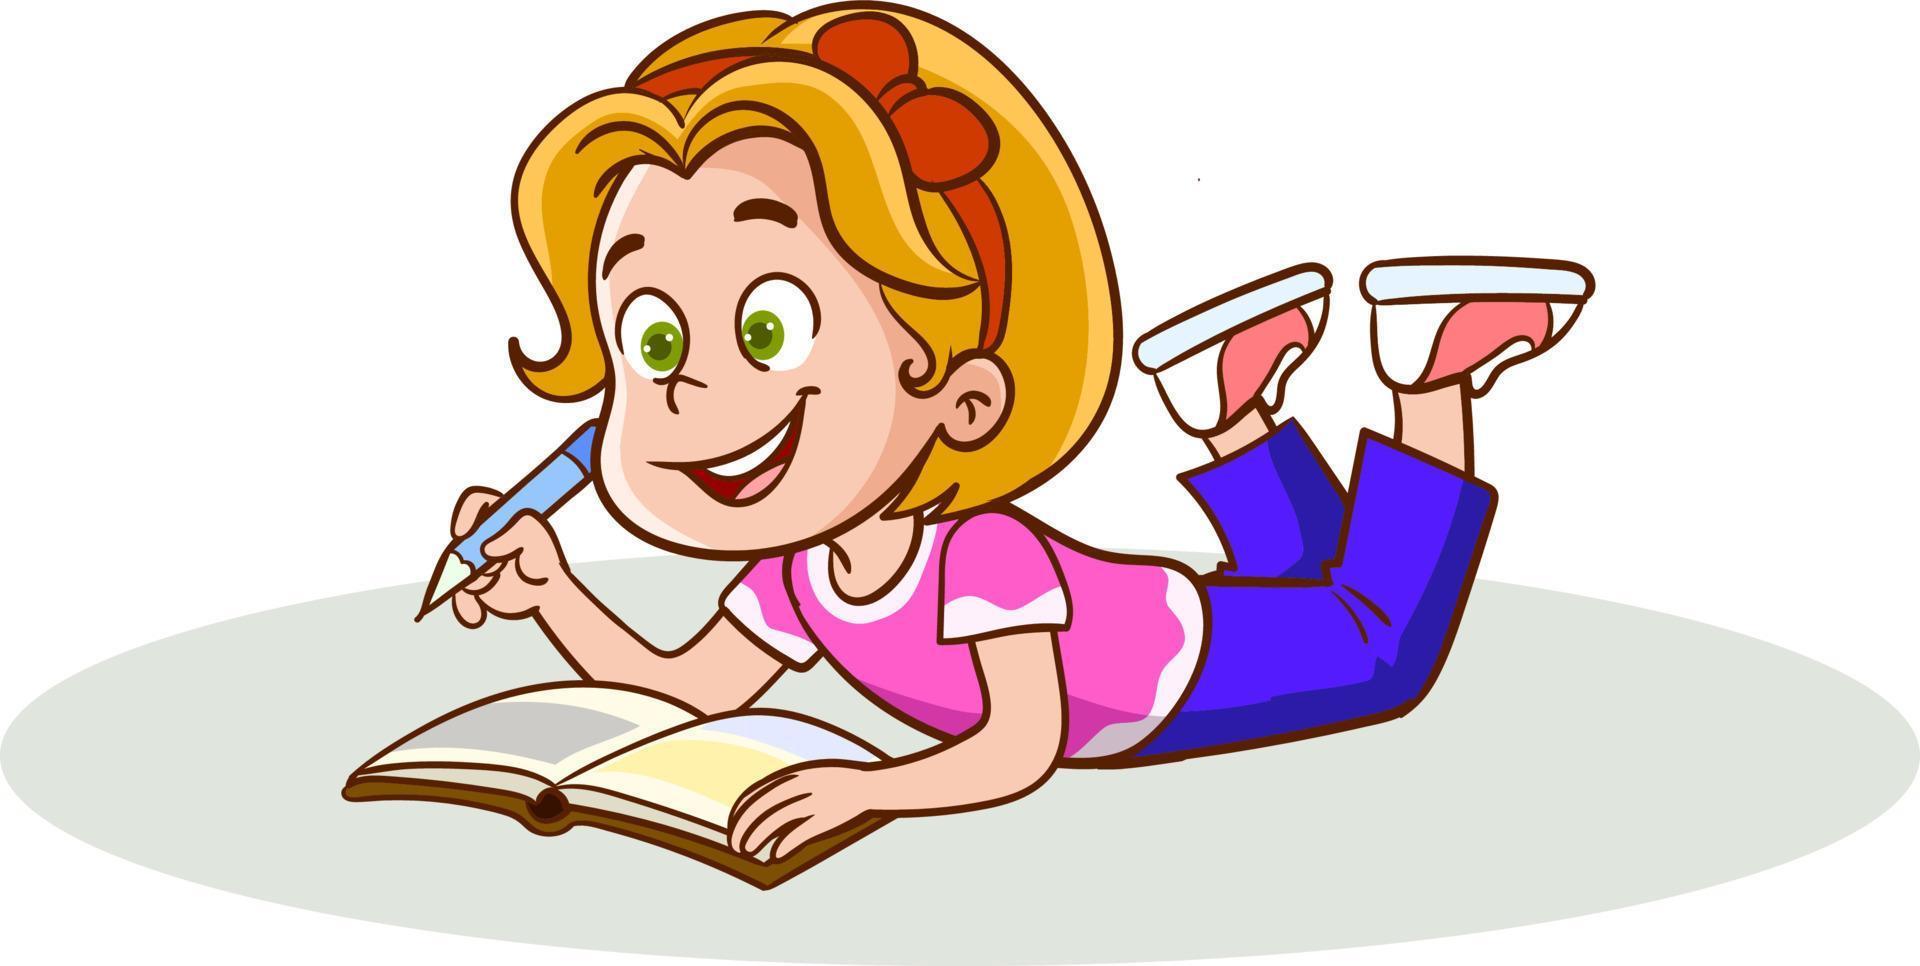 süßes kleines Mädchen, das auf dem Bauch liegt und ein Buch liest, Kind genießt das Lesen, bunte Charaktervektorillustration vektor